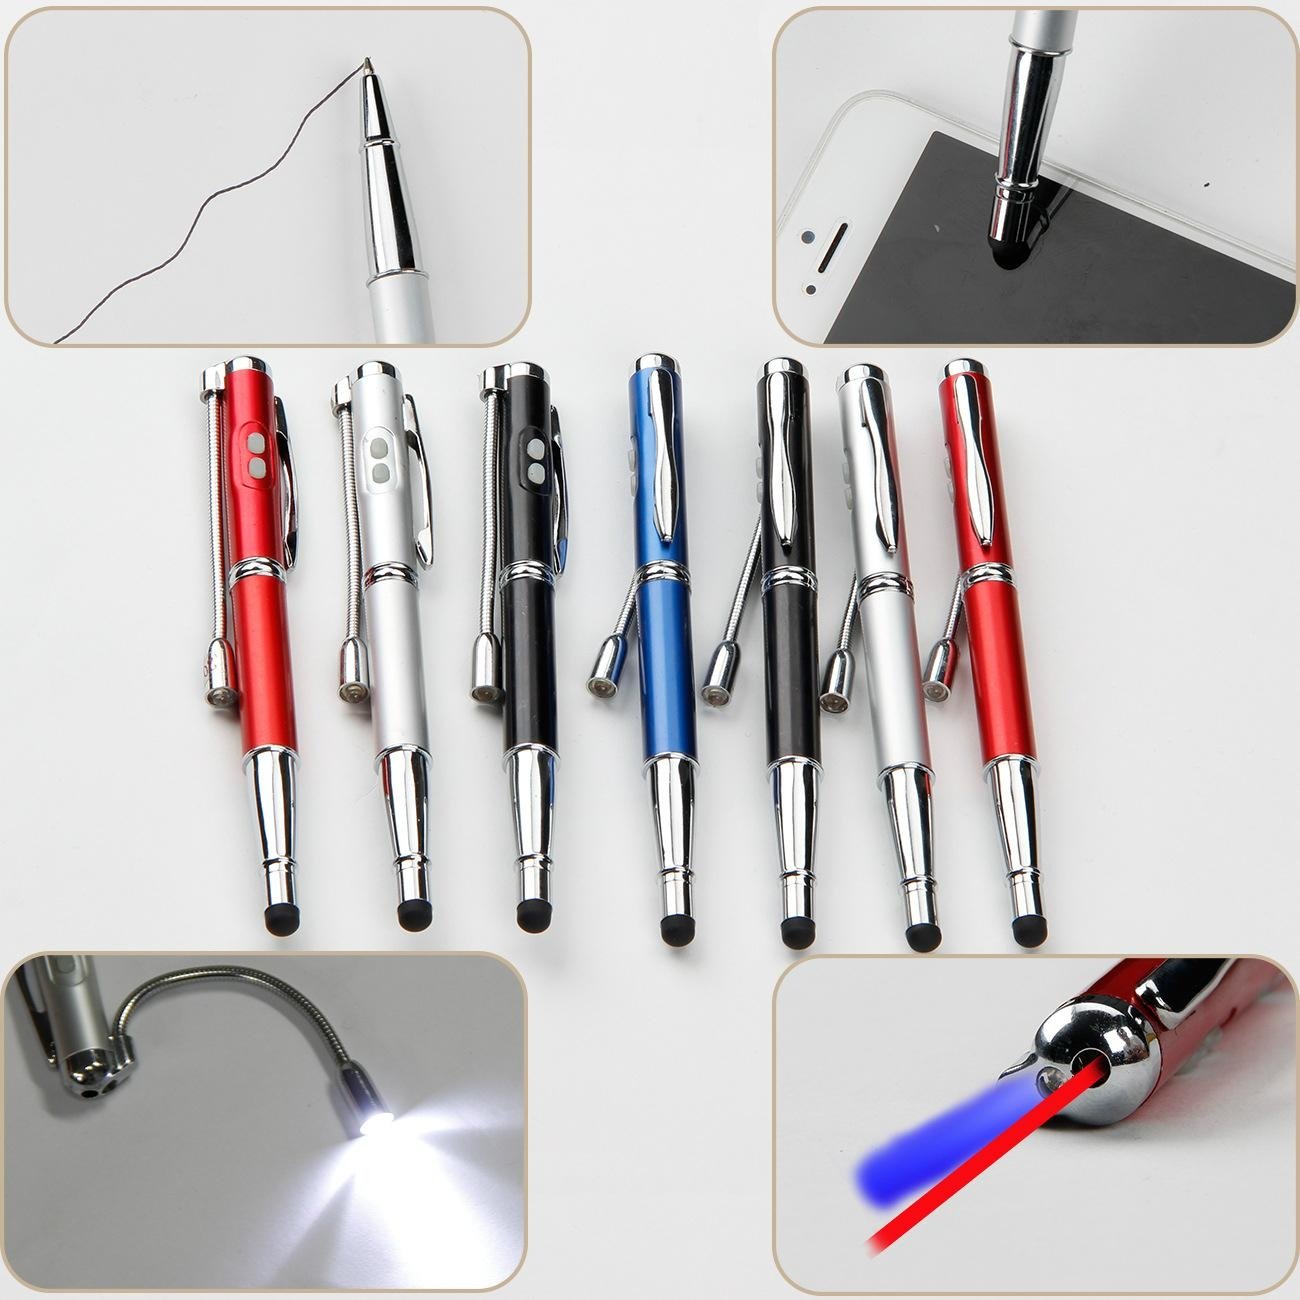 5 In 1 Laser Pointer LED Light Ball Pen Stylus Pen with UV Money Detector 4